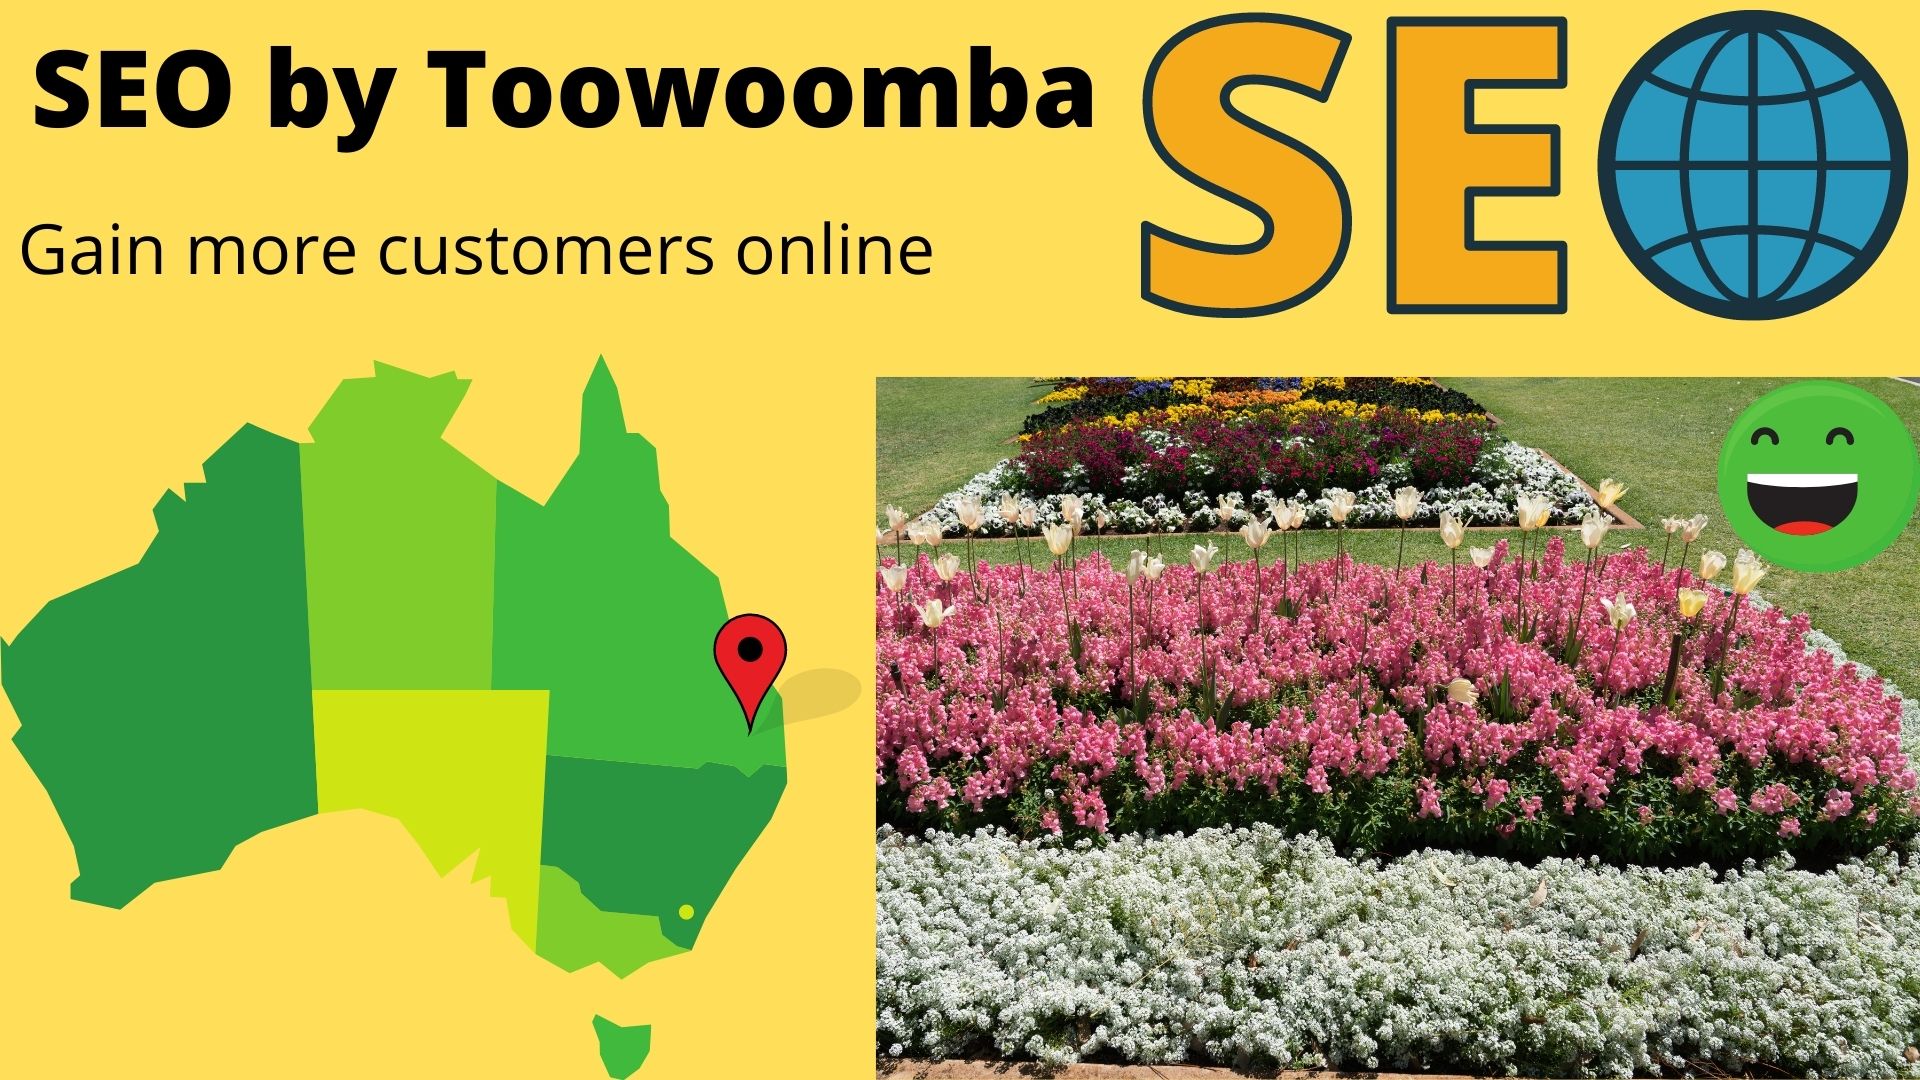 SEO by Australian City - Toowoomba